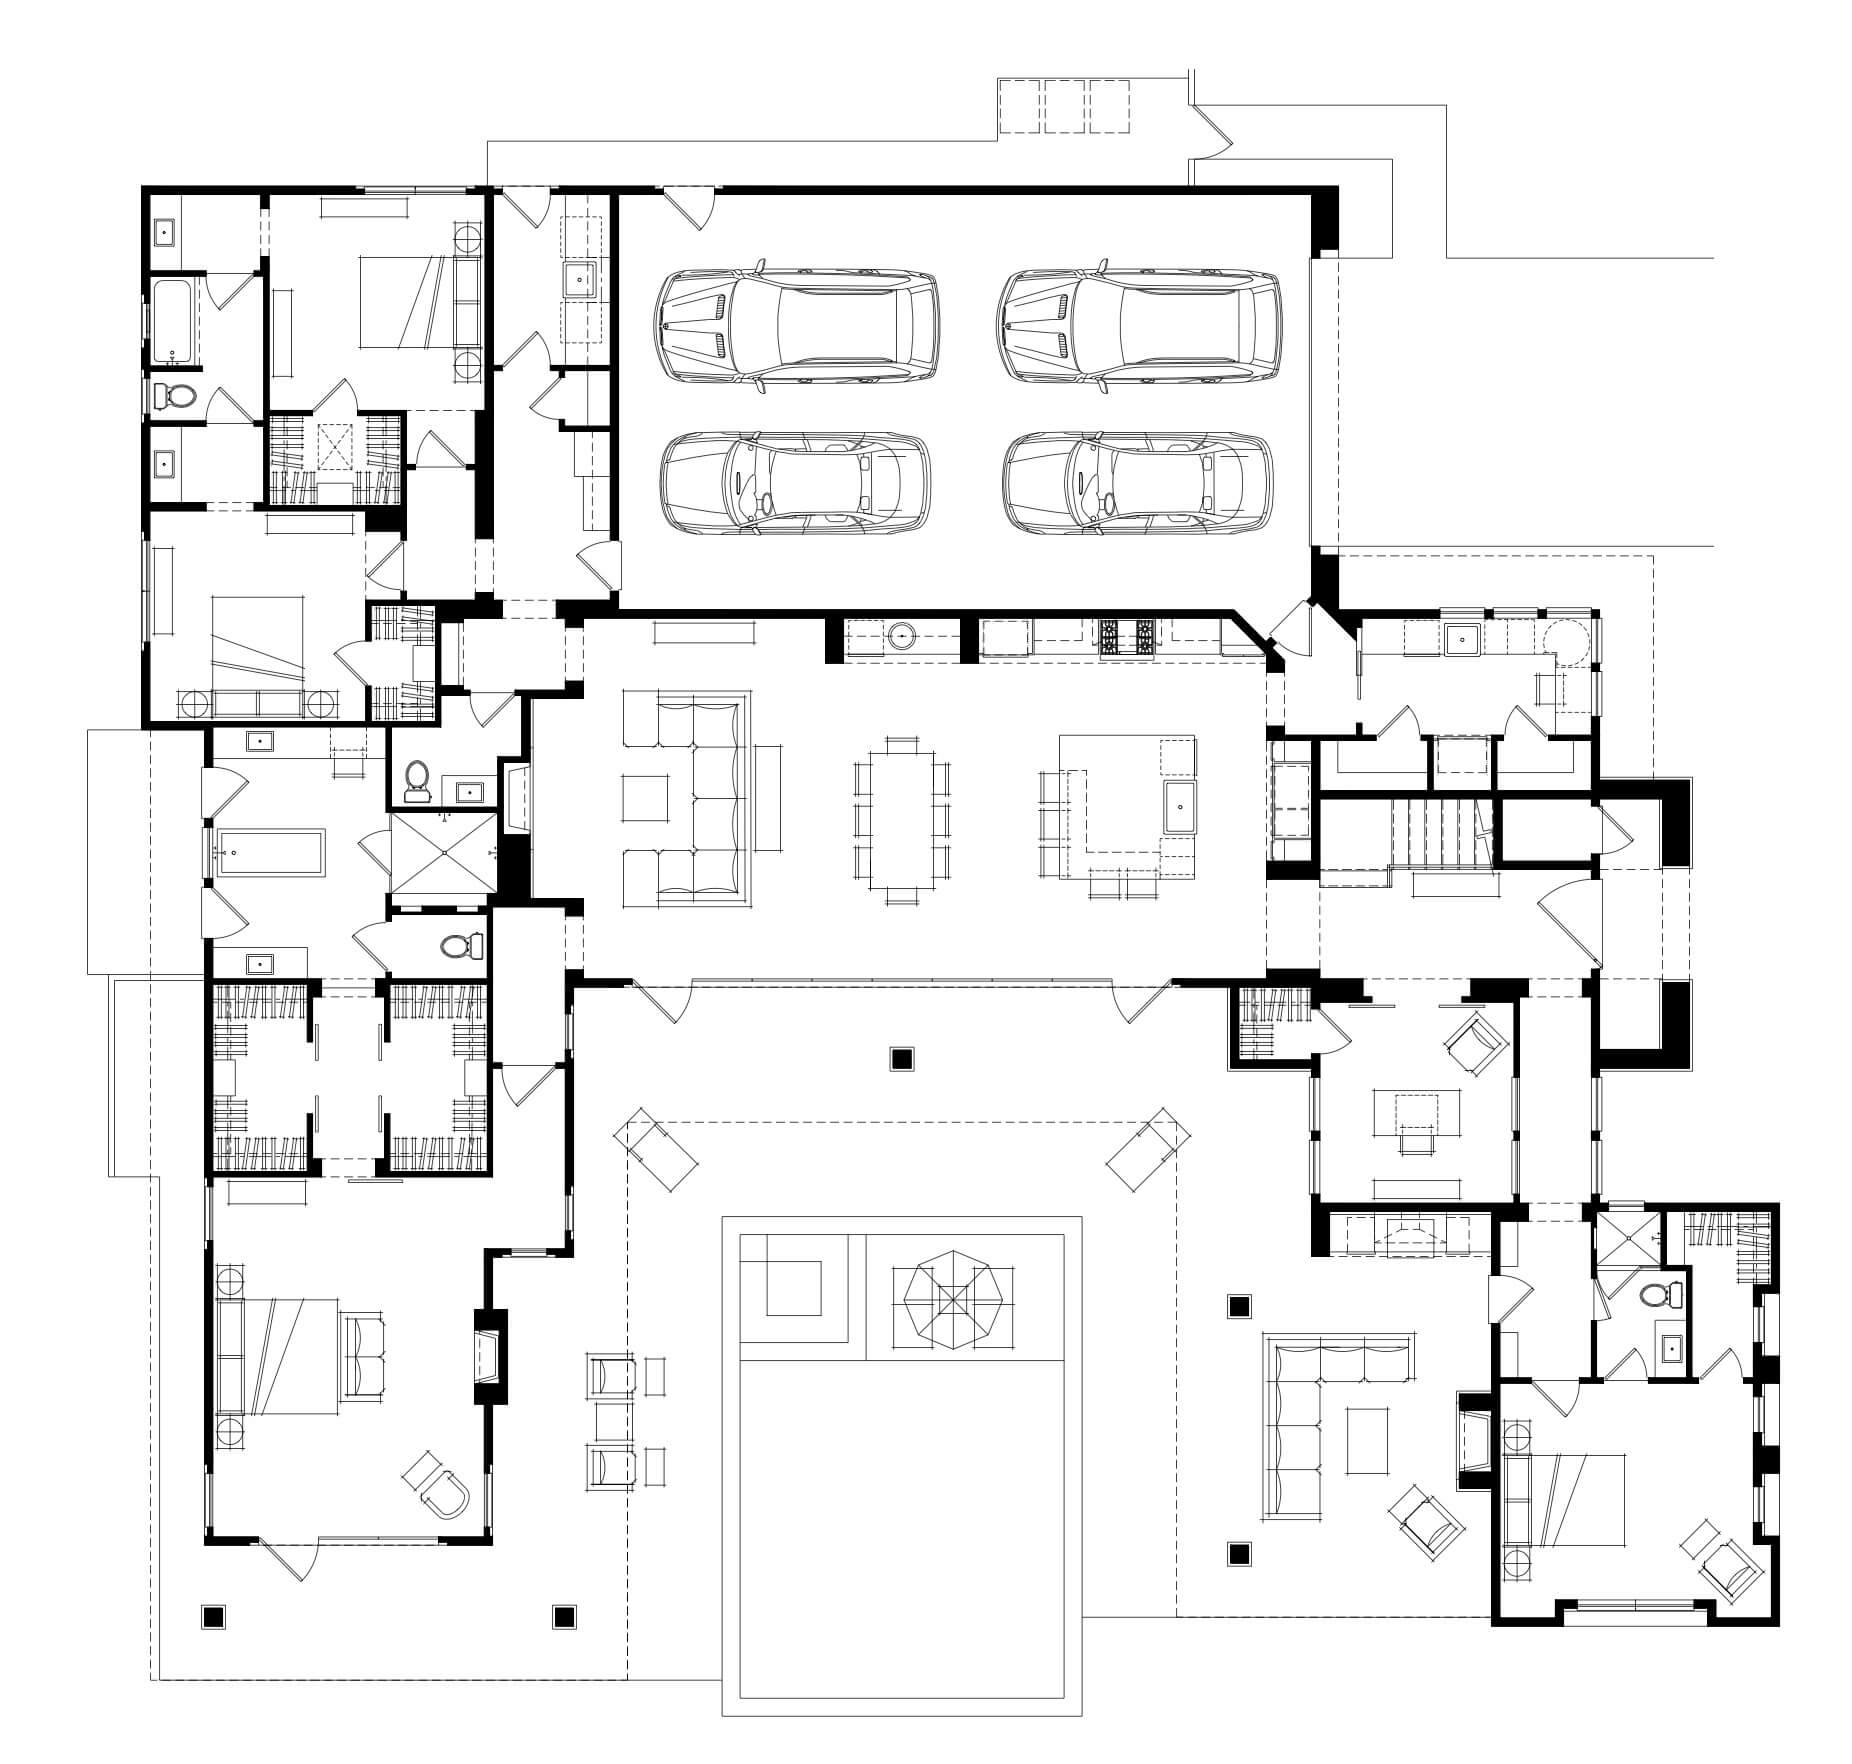 Lot 57 - Floor Plan